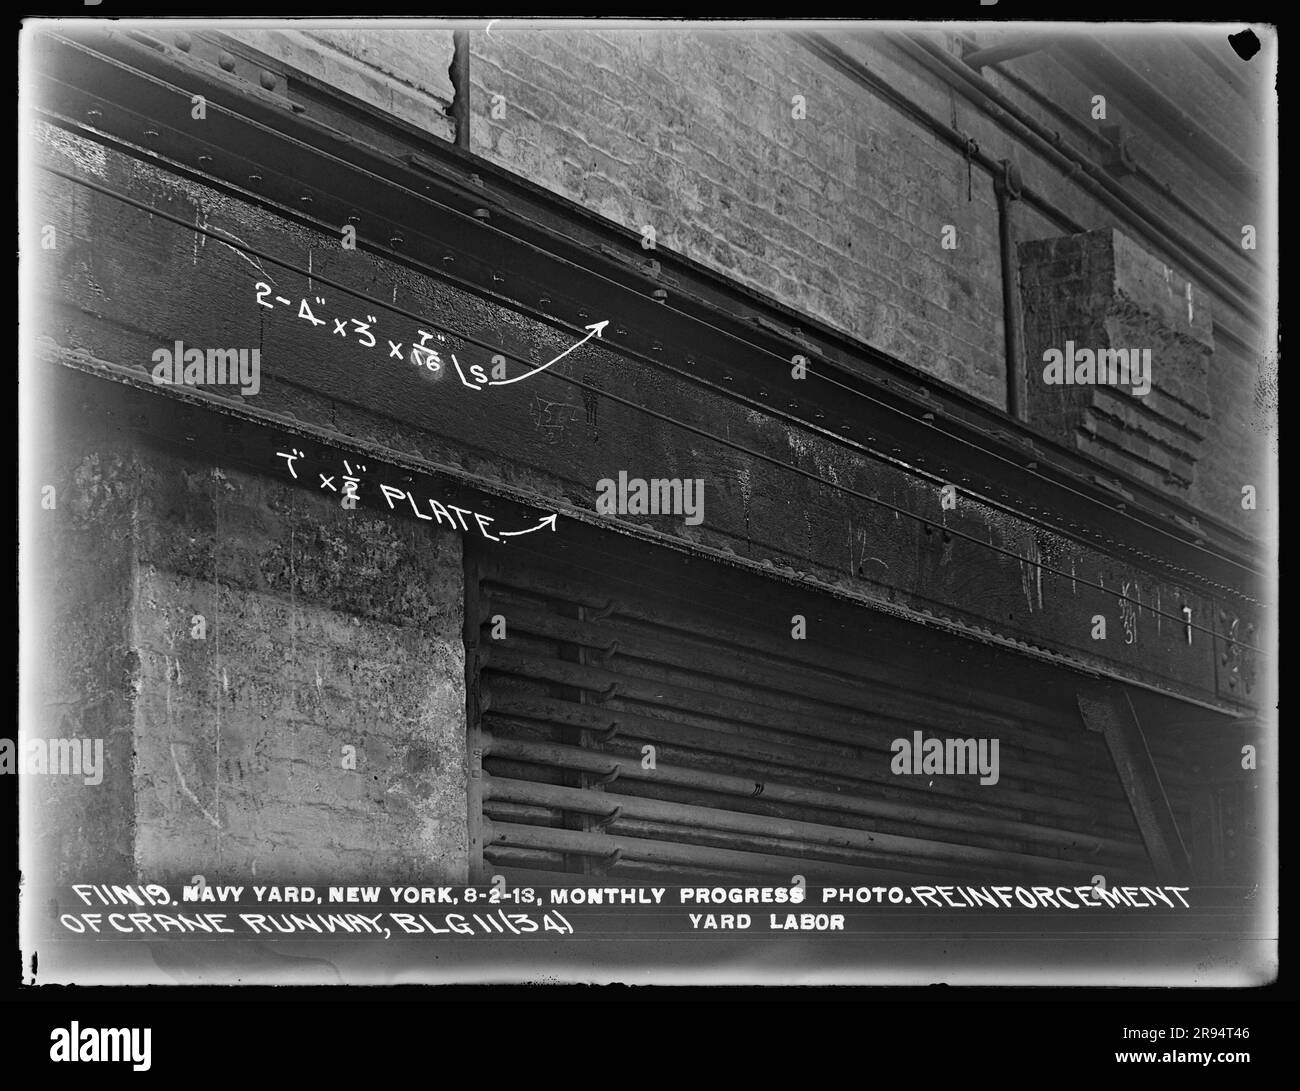 Edificio 11 (34), rinforzo della passerella della gru. Vetri negativi della costruzione e riparazione di edifici, strutture e navi presso il New York Navy Yard. Foto Stock